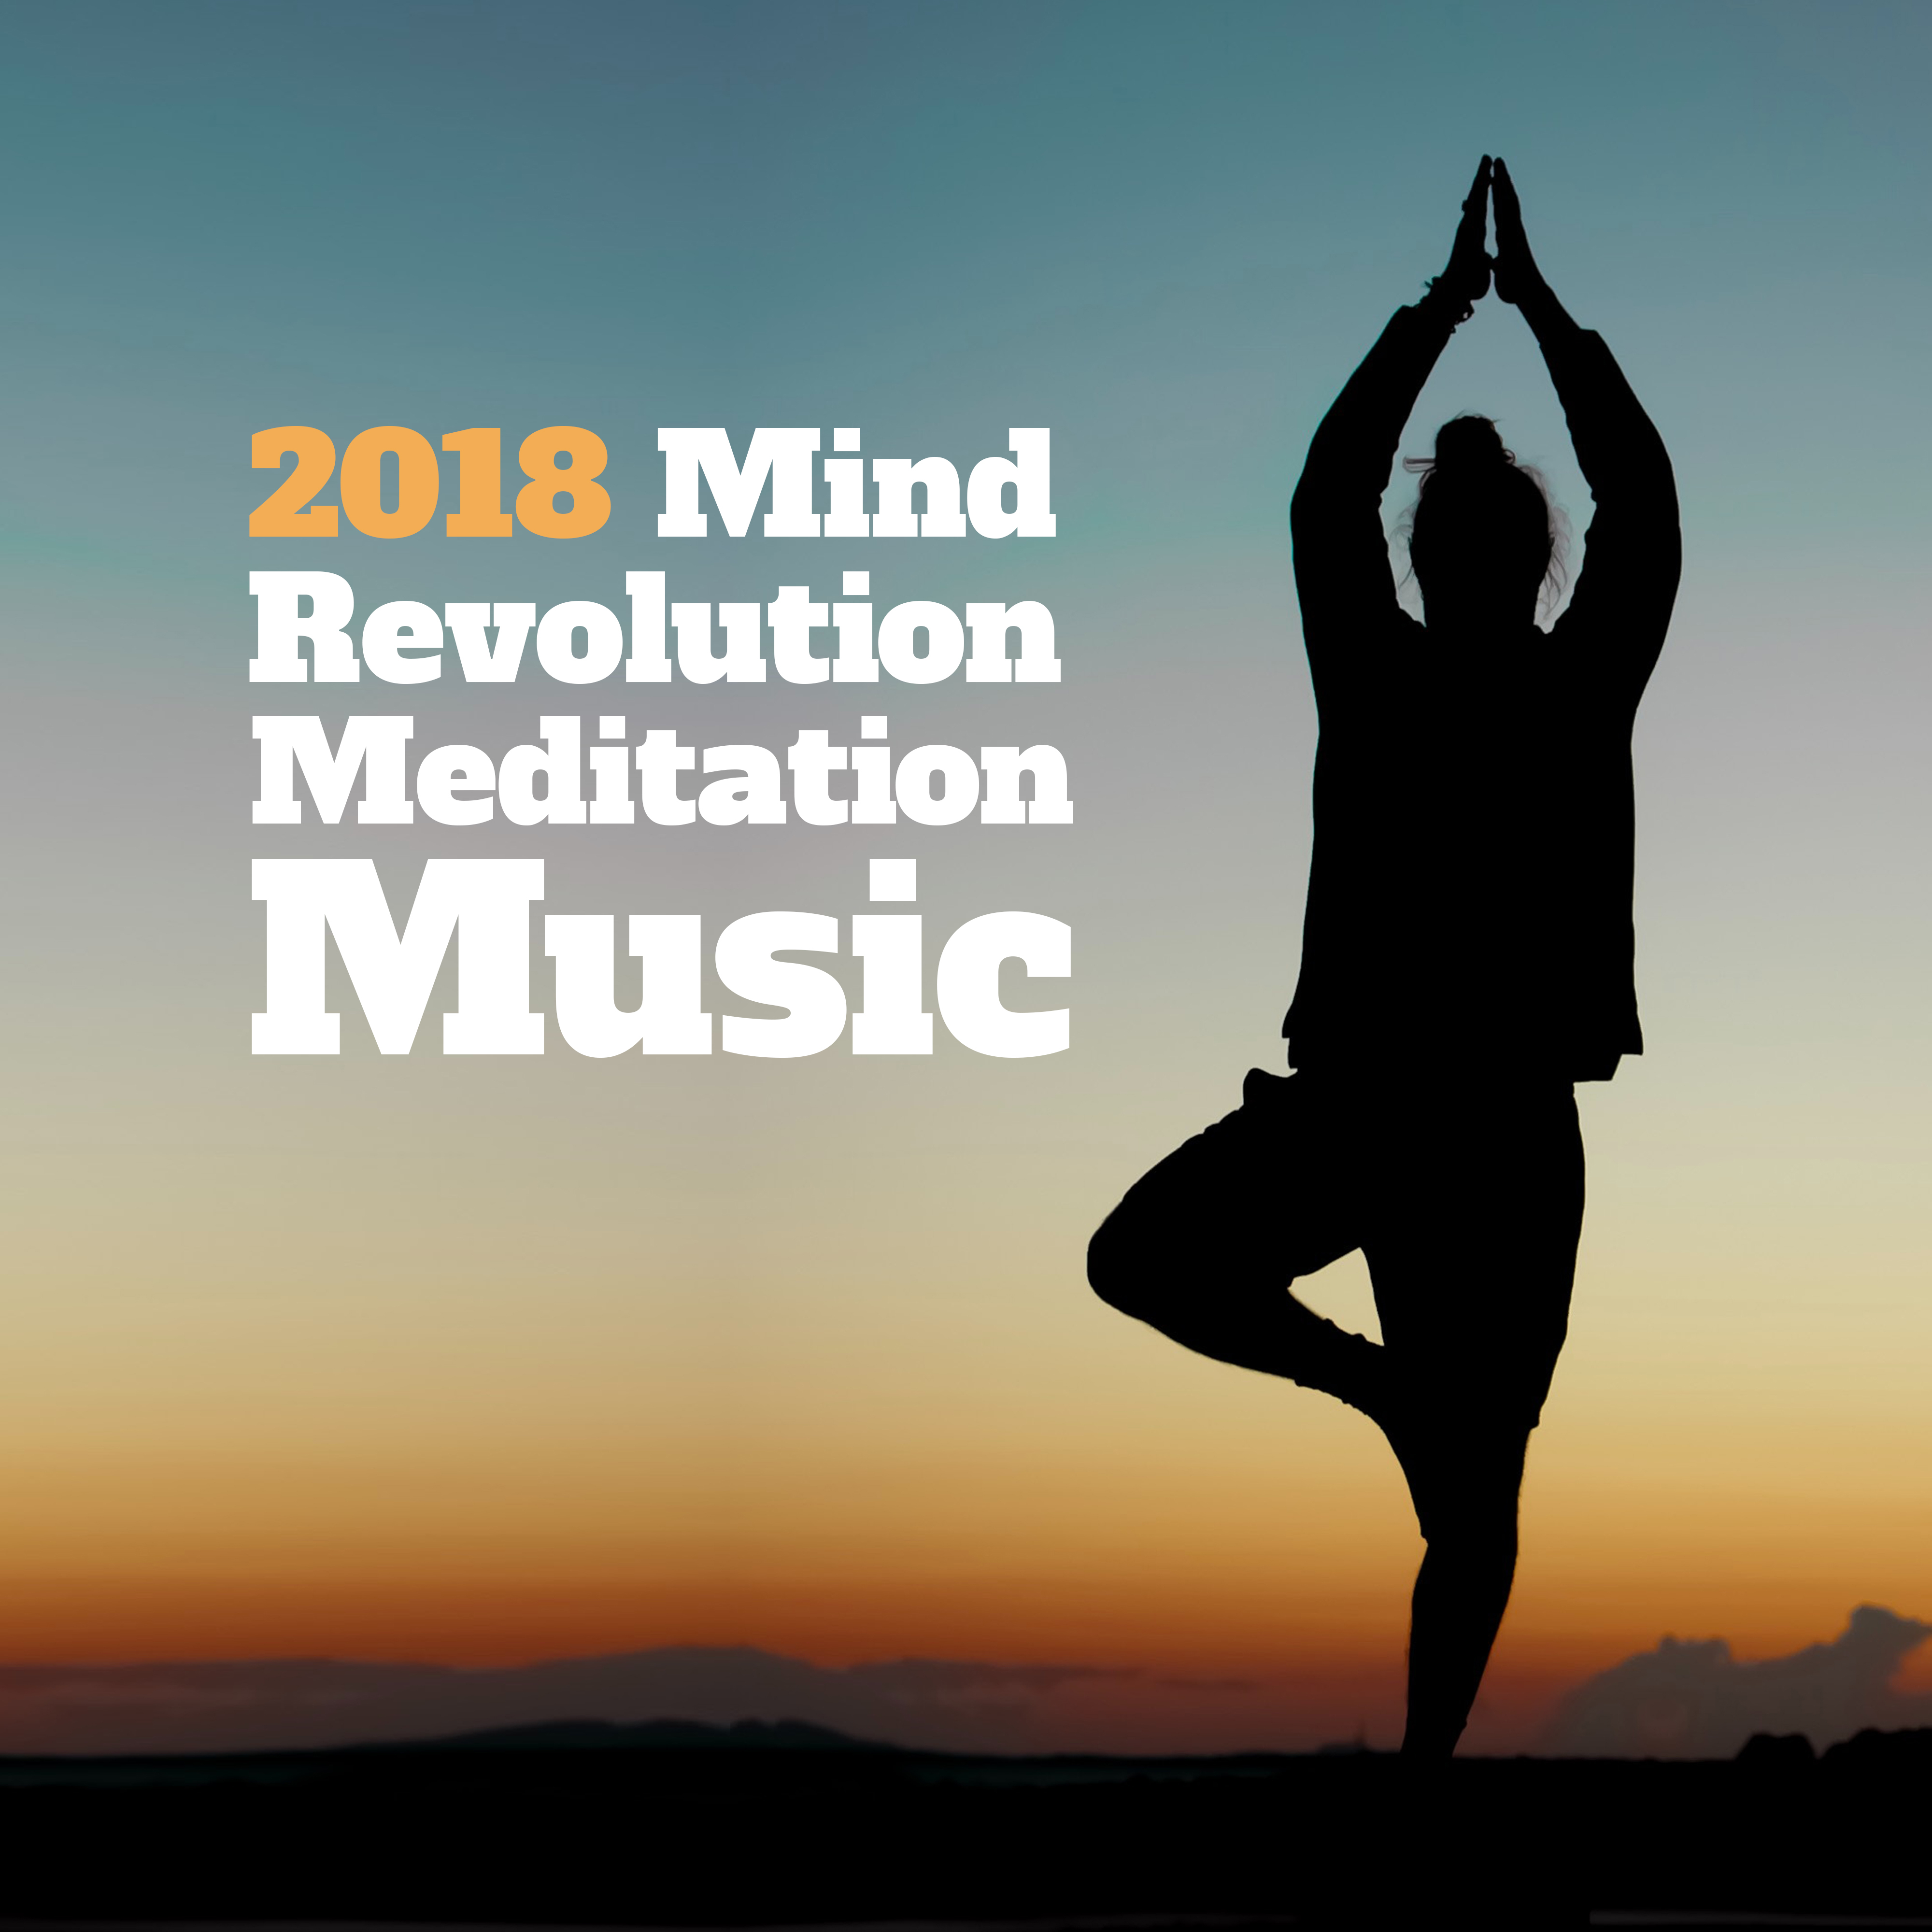 2018 Mind Revolution Meditation Music